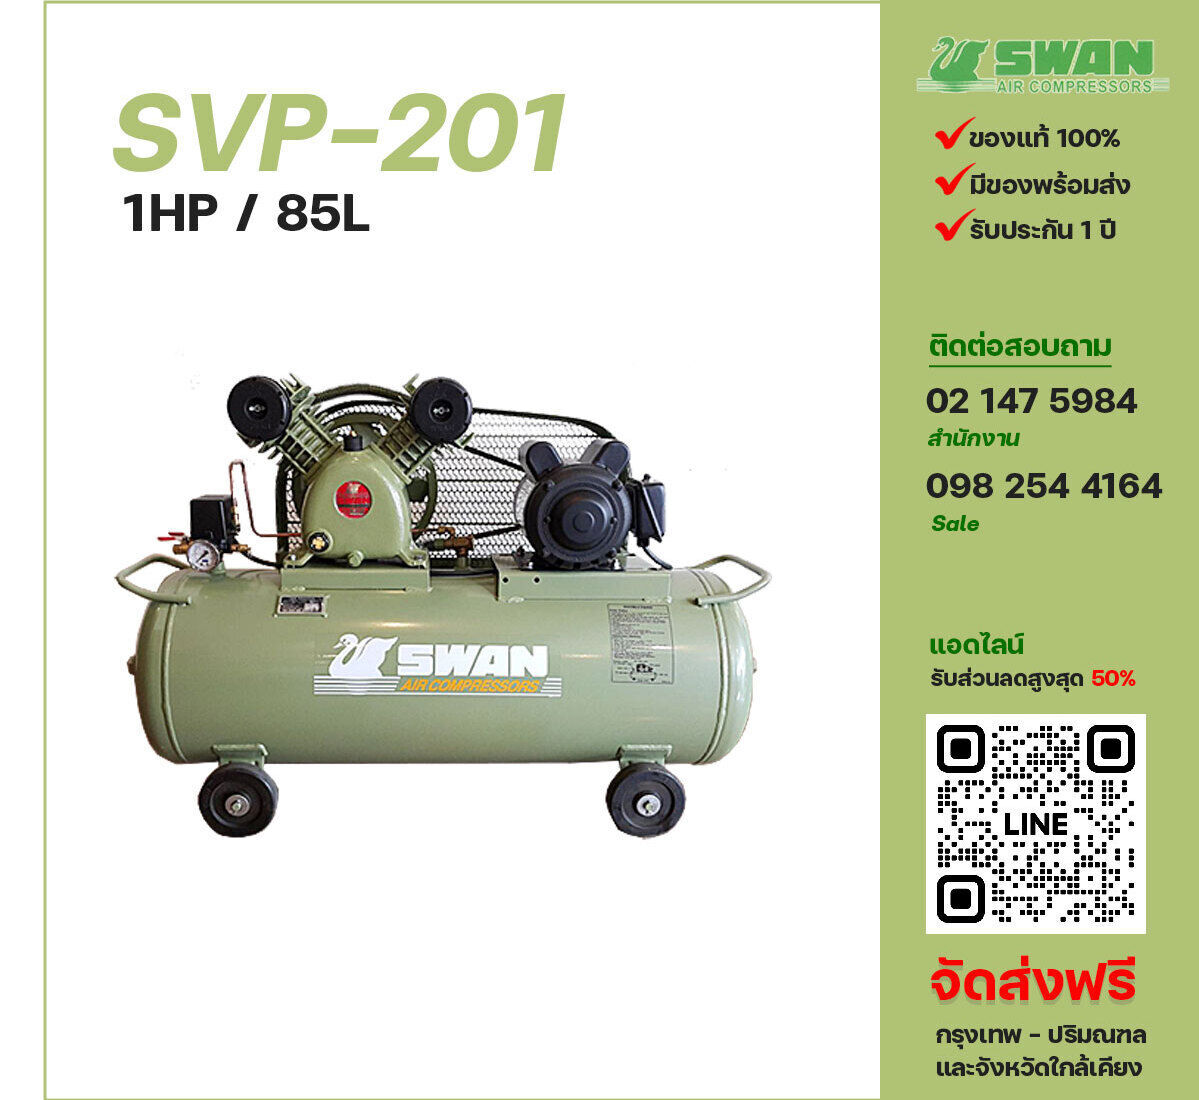 ปั๊มลมสวอน SWAN SVP-201 220V/380V ปั๊มลมลูกสูบ ขนาด 2 สูบ 1 แรงม้า 85 ลิตร SWAN พร้อมมอเตอร์ ไฟ 220V/380V ส่งฟรี กรุงเทพฯ-ปริมณฑล รับประกัน 1 ปี